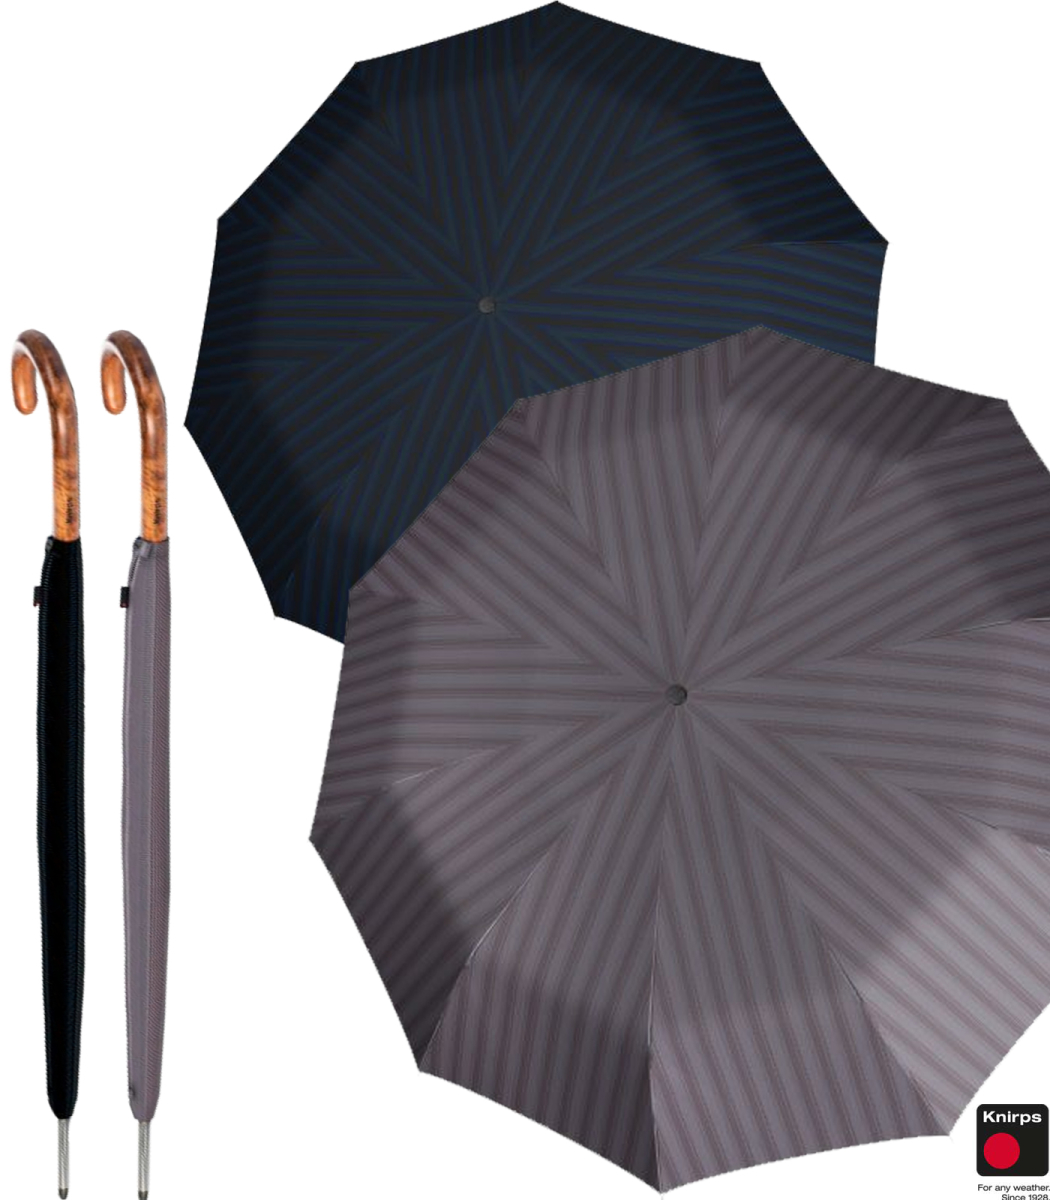 schwarz happy rain selection Herren Regenschirm Stockschirm Gents Long AC 10 mit Automatik black